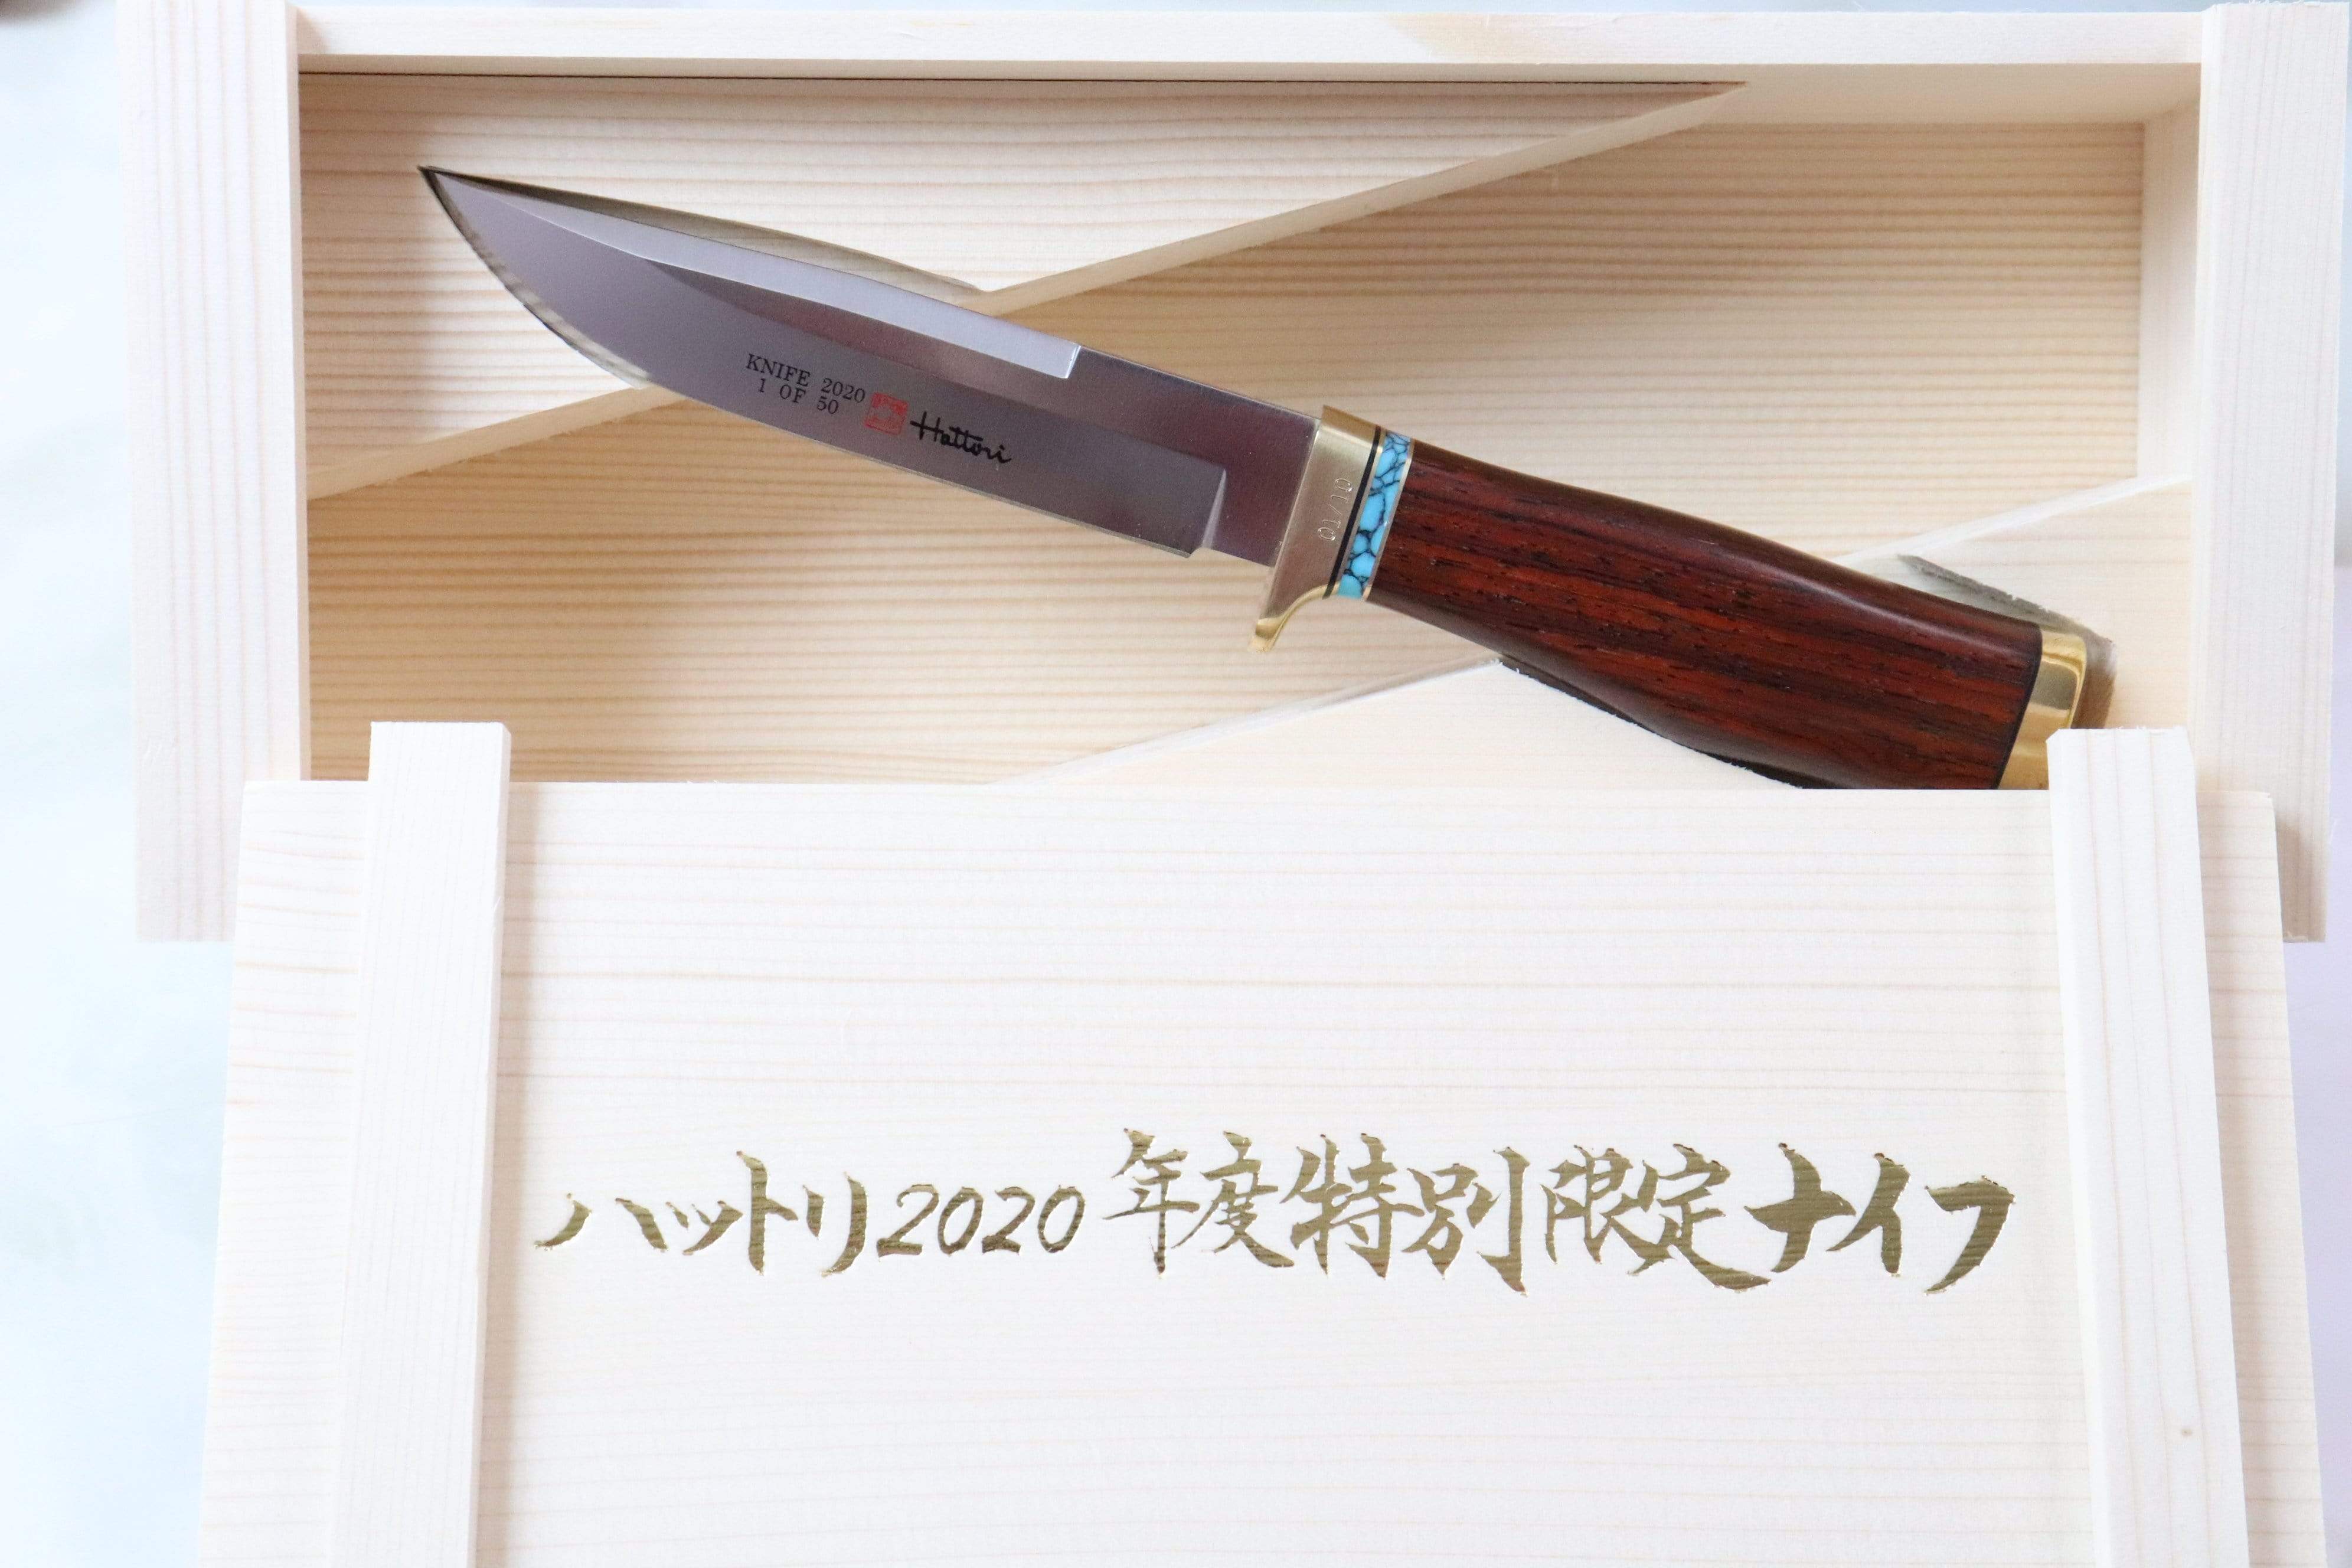 Hattori Year 2020 Limited H-2020T Precision Master Premium Edition